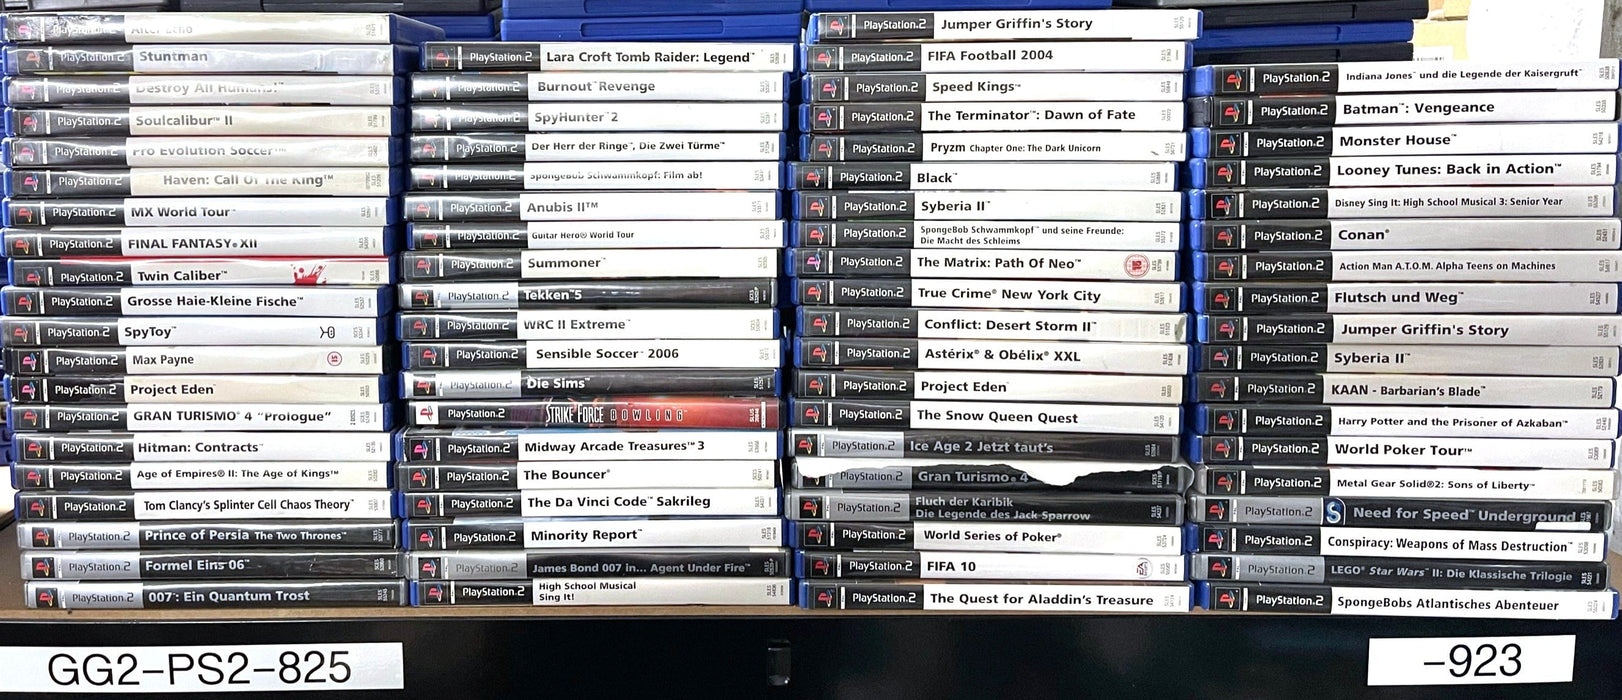 Glaciergames PlayStation 2 Game Gran Turismo 3: A-spec PlayStation 2 (Nr.1215)